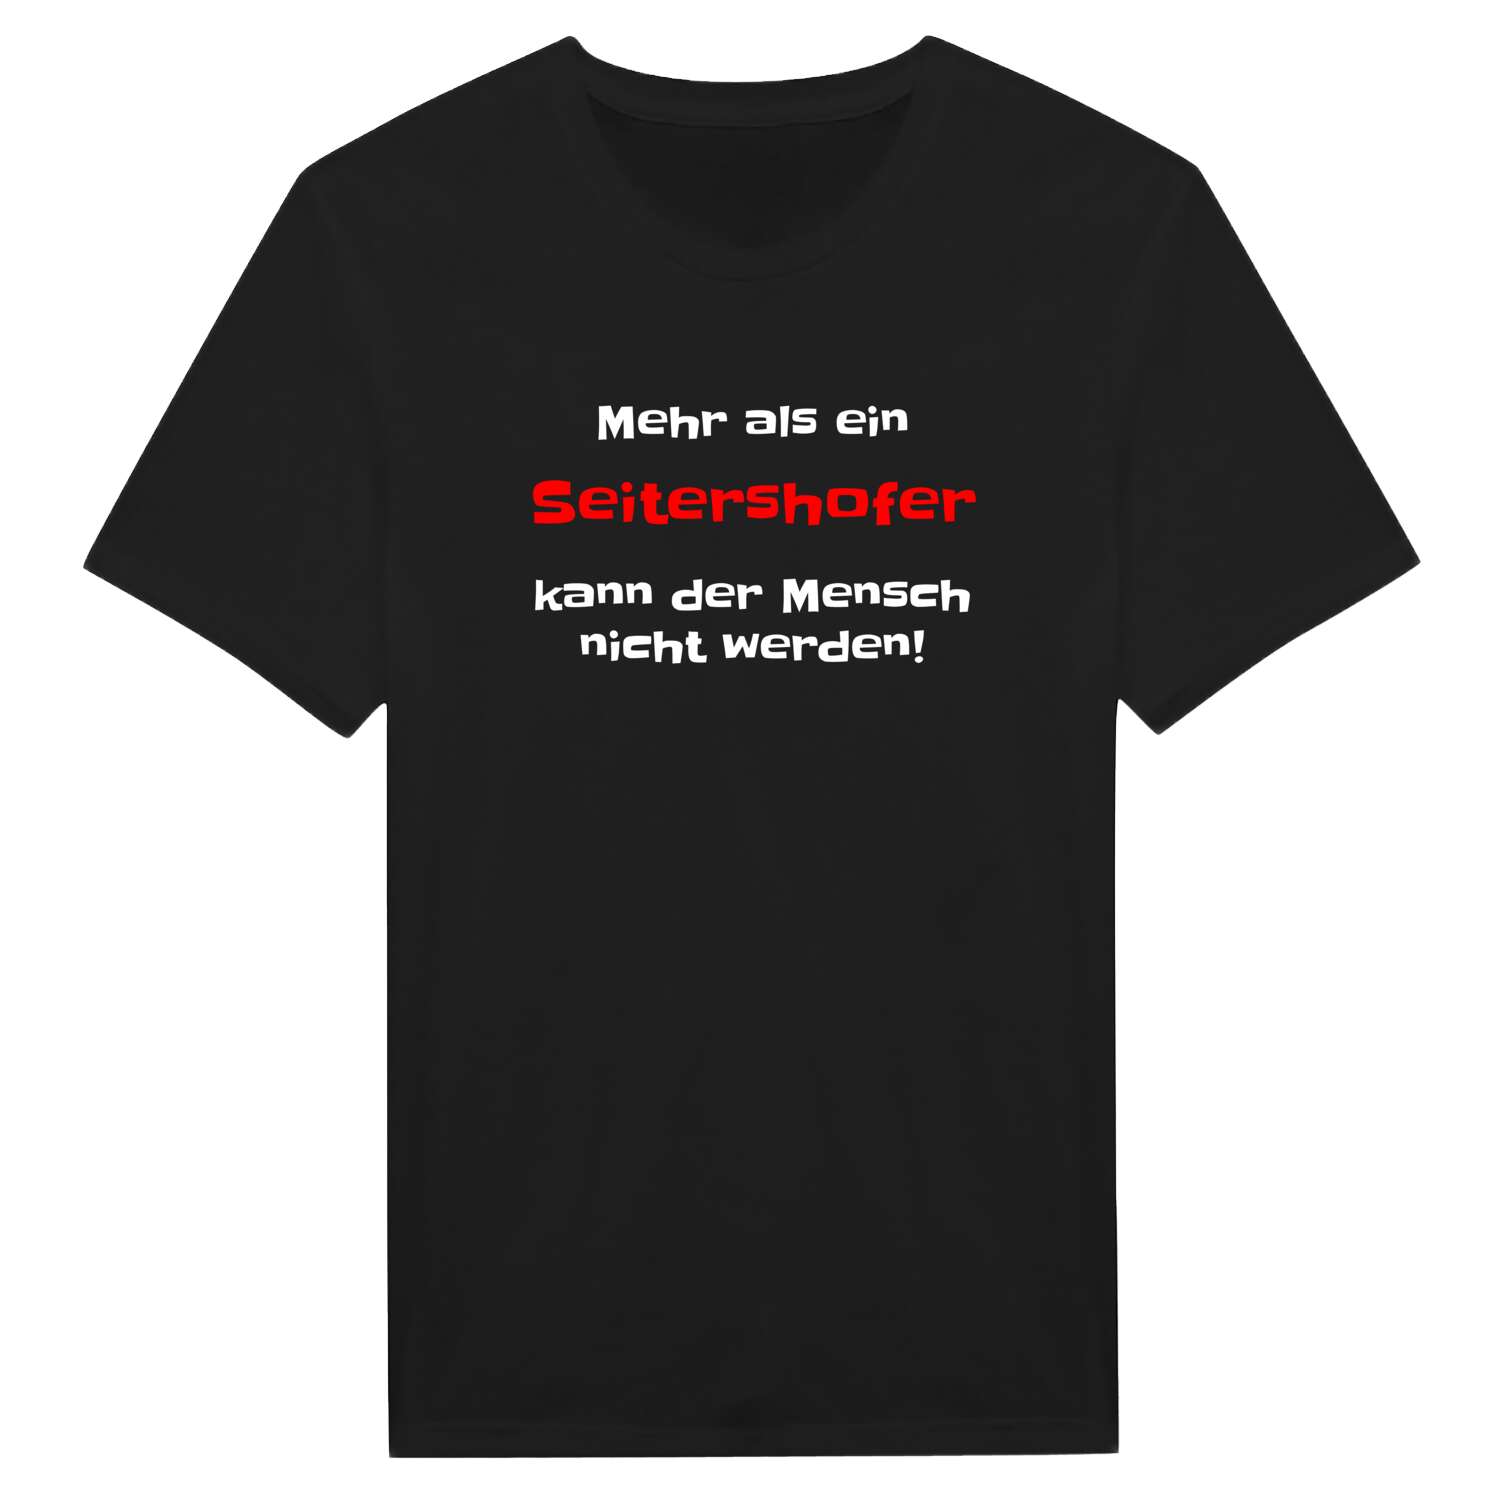 Seitershof T-Shirt »Mehr als ein«